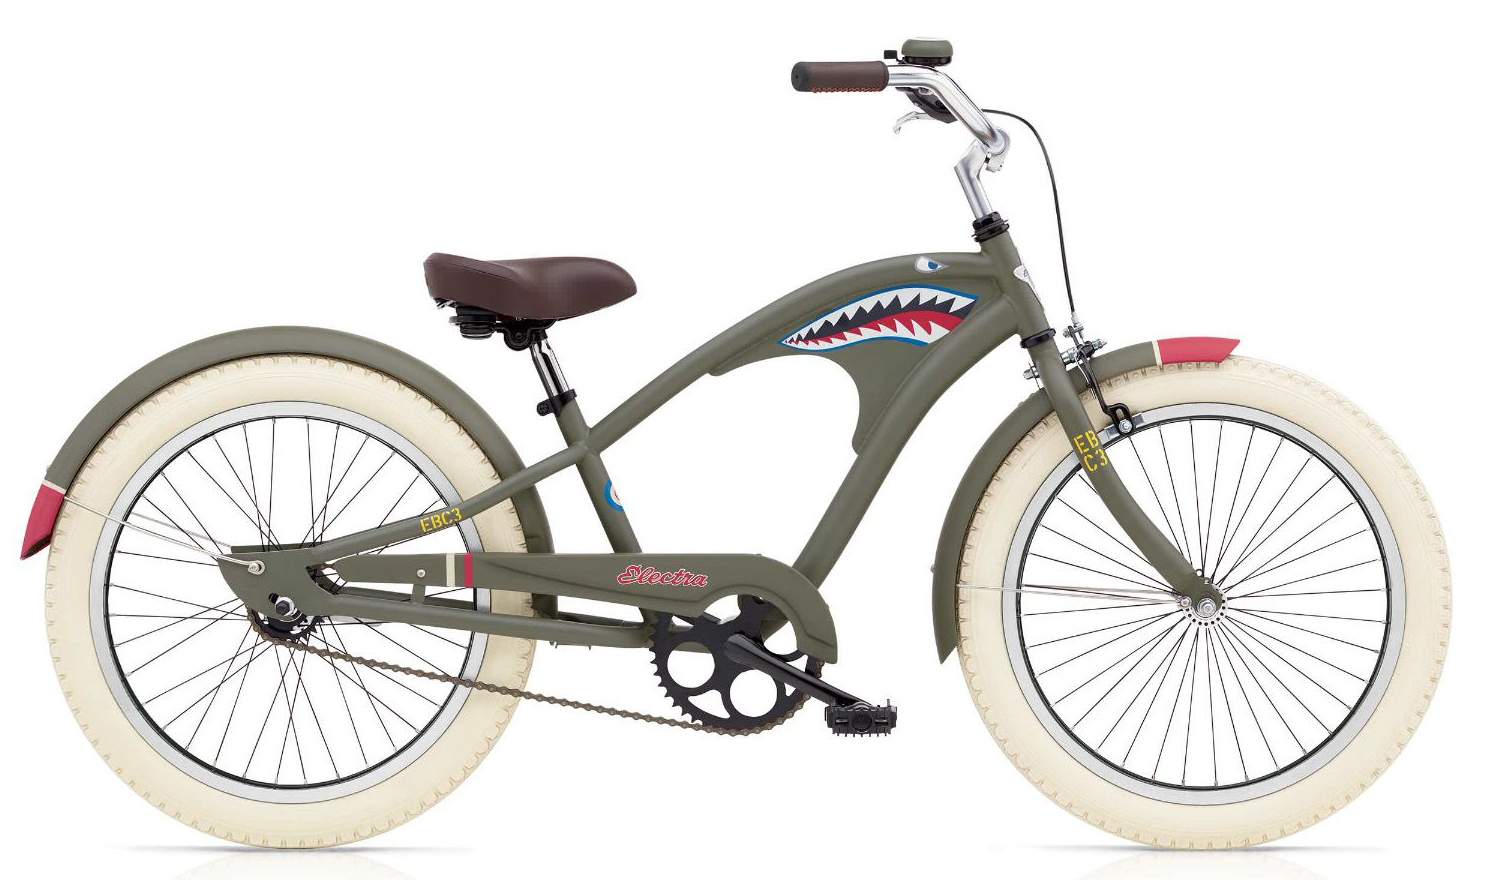  Велосипед Electra Tiger Shark 3i '20 2019